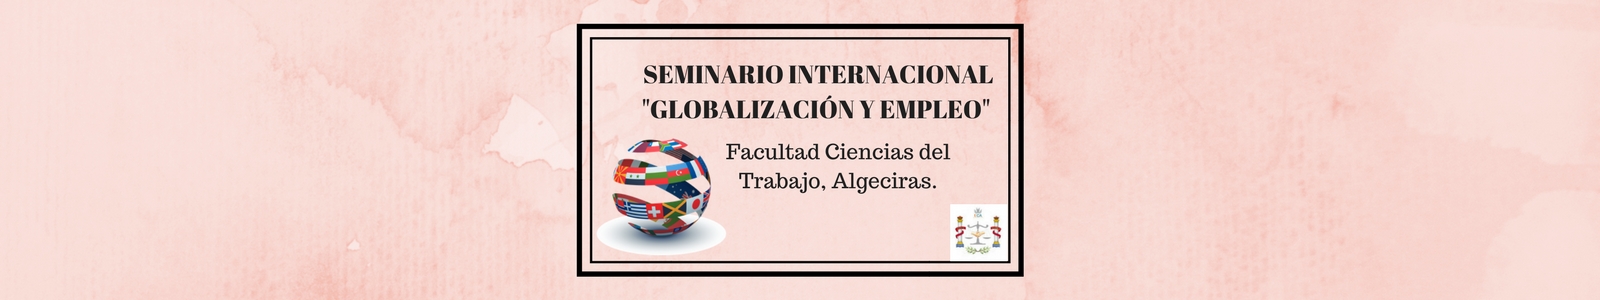 SEMINARIO INTERNACIONAL "GLOBALIZACIÓN Y EMPLEO"